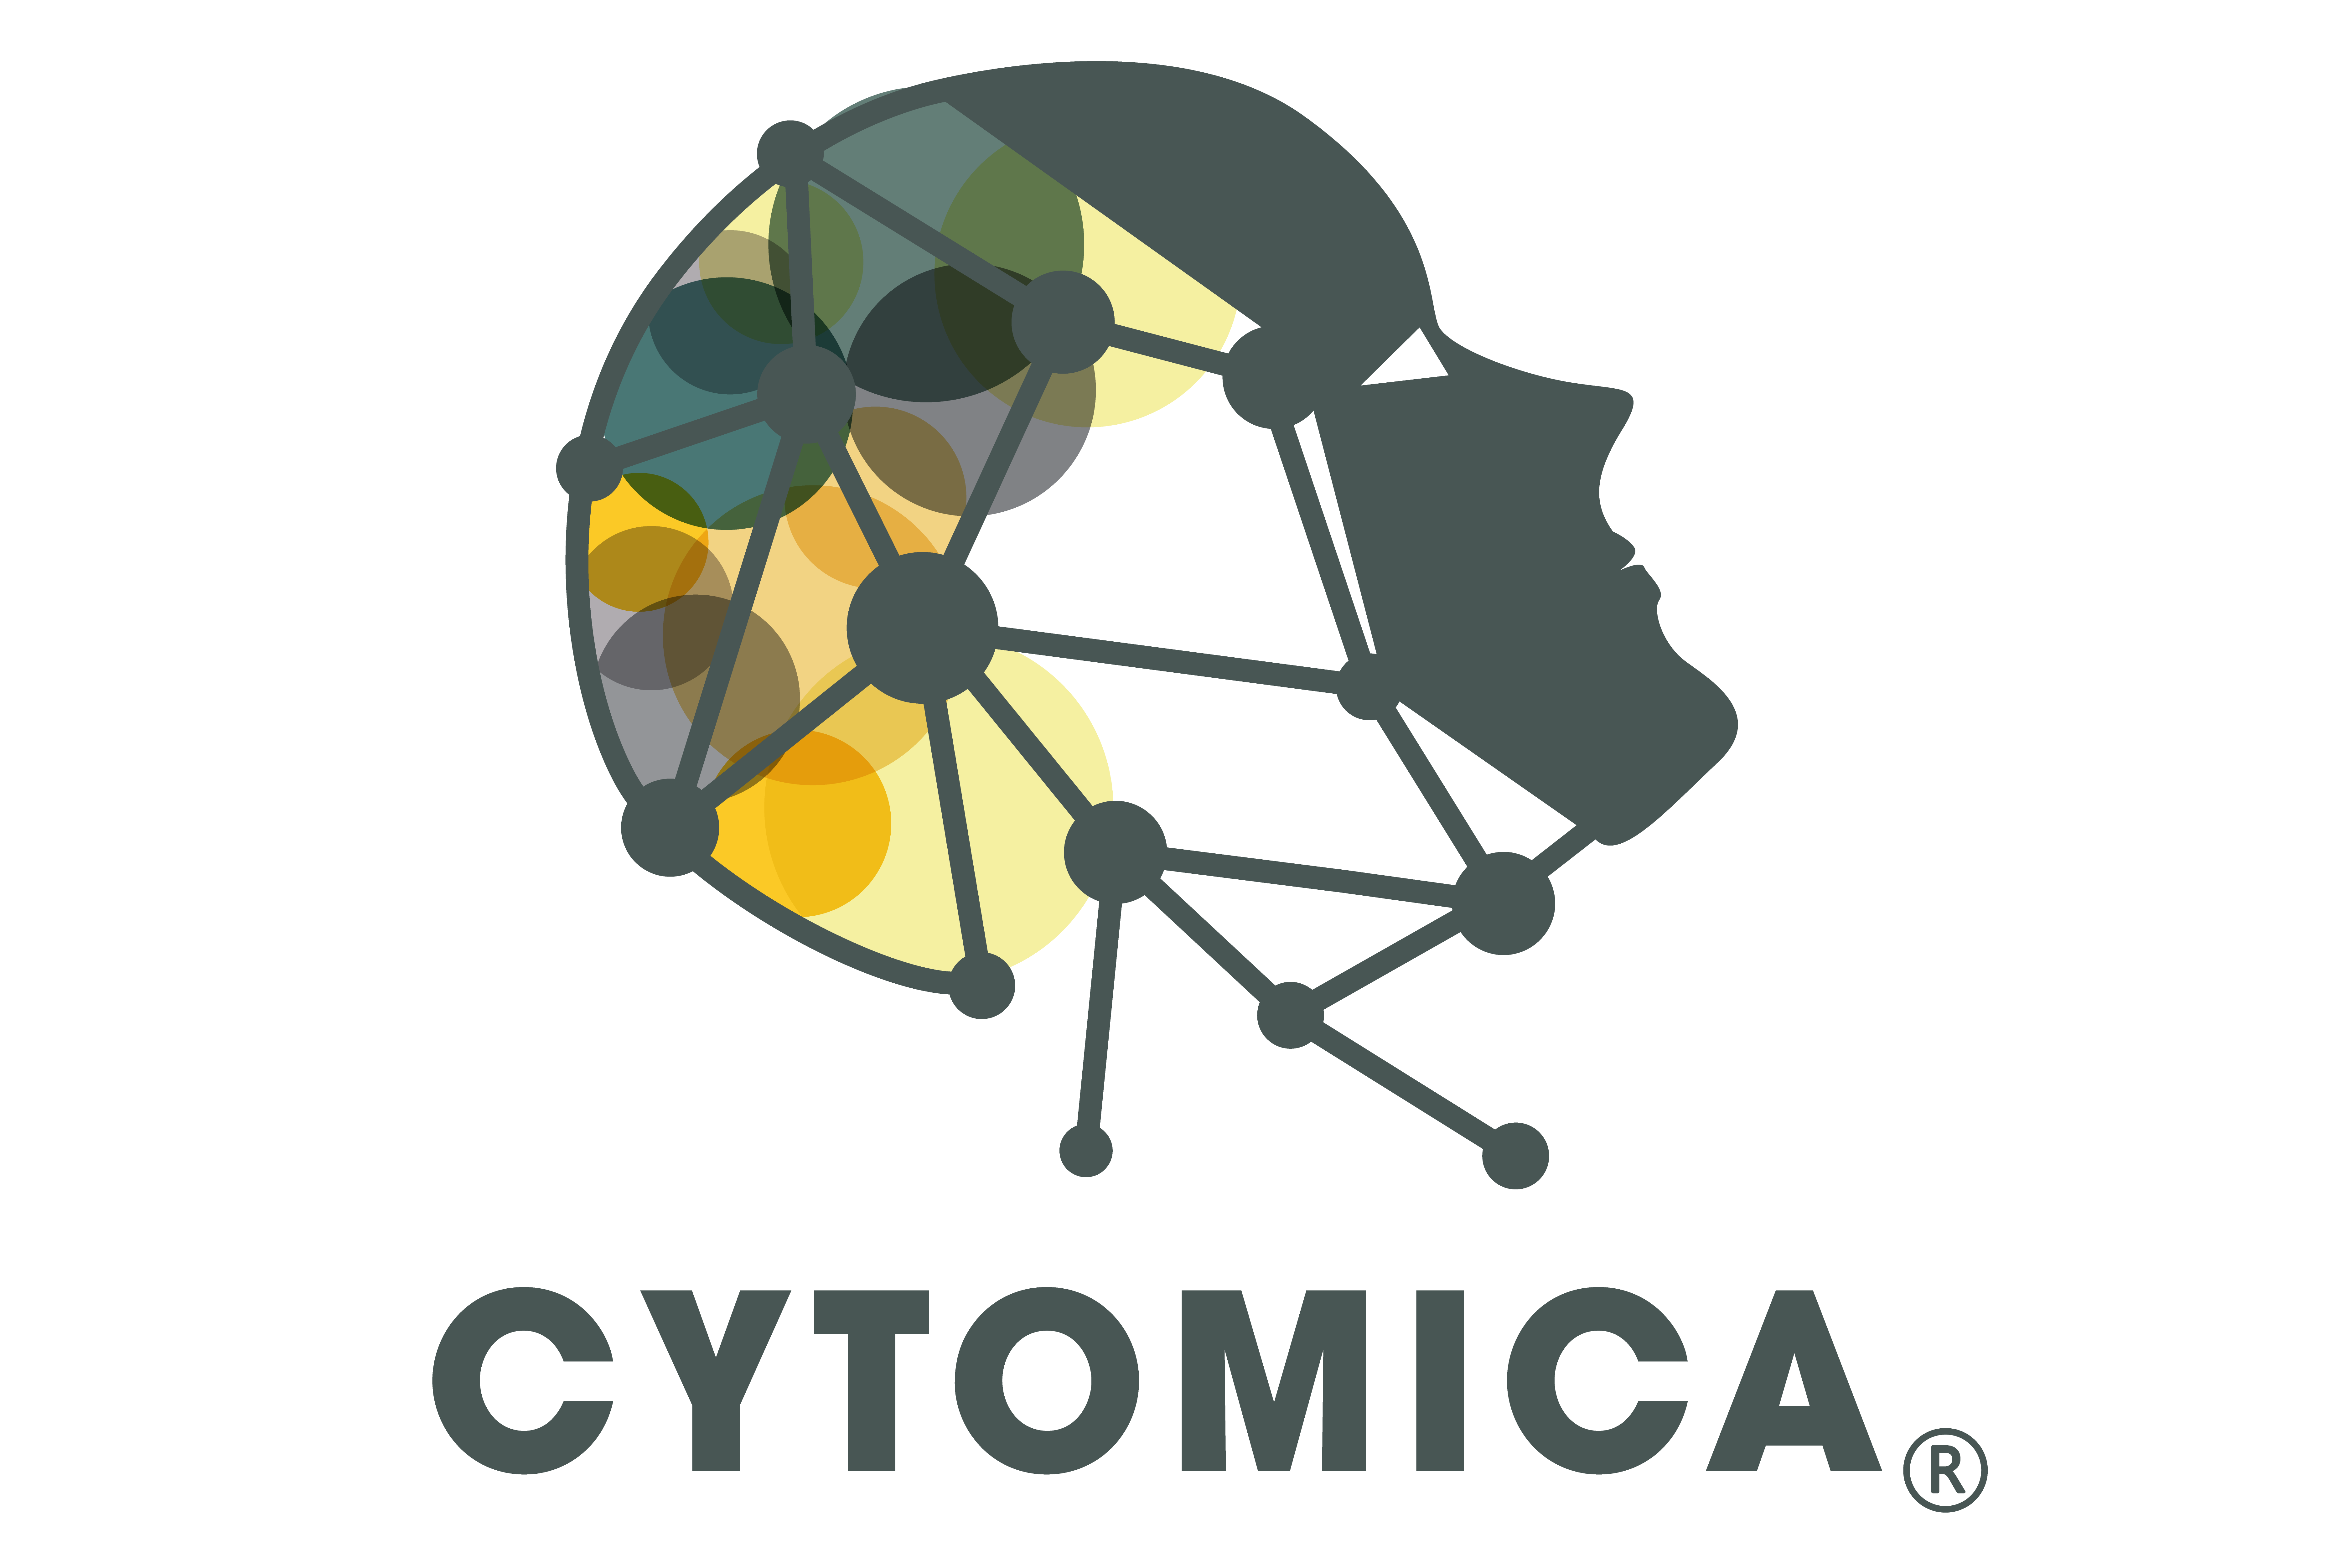 Cytomica